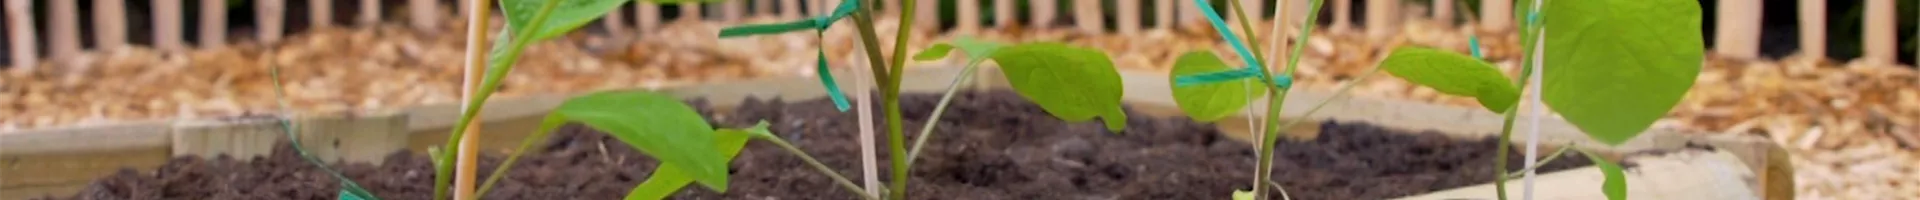 Aubergine - Einpflanzen im Gemüsebeet (Thumbnail).jpg